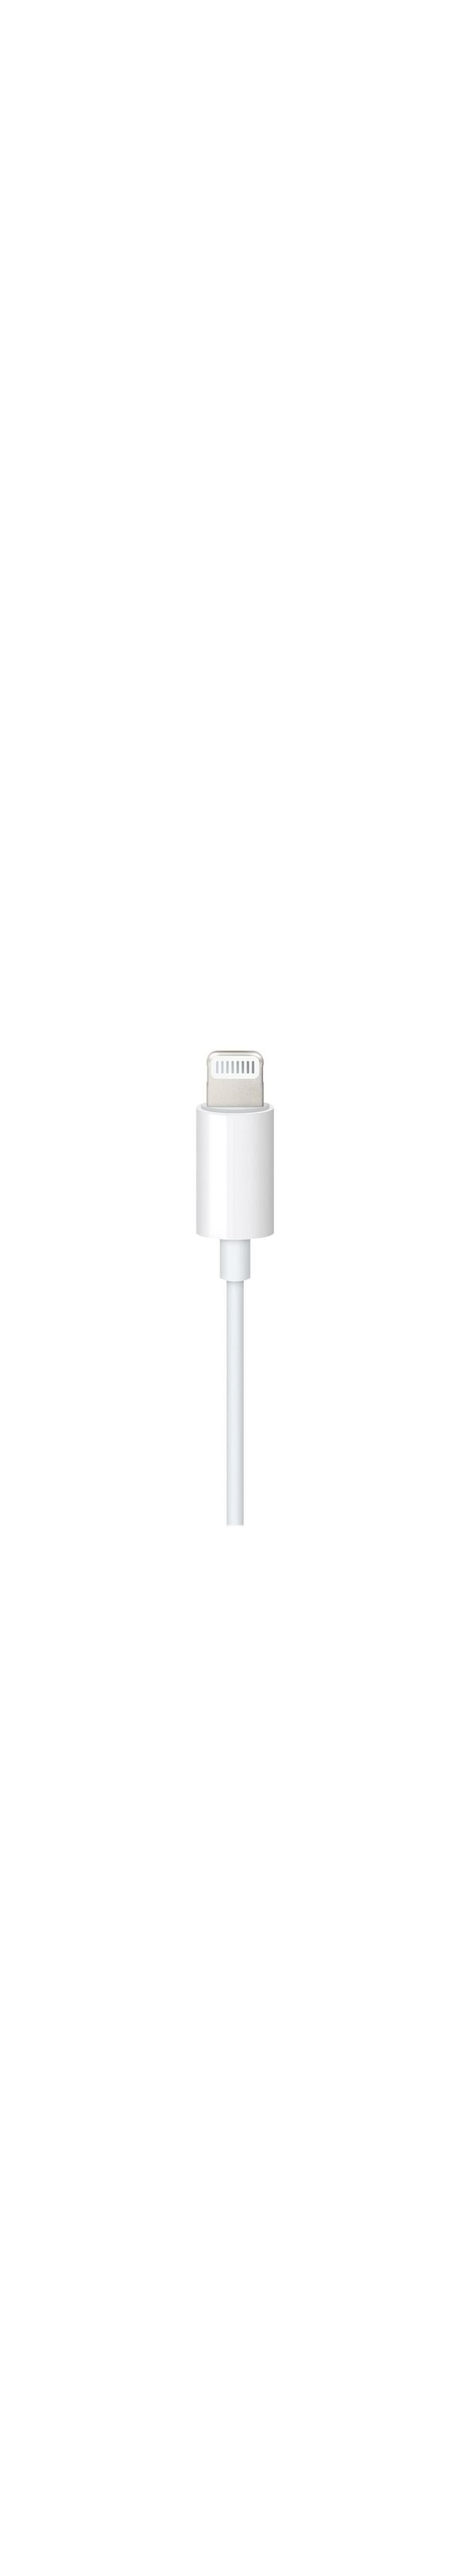 Lightning Audio günstig Kaufen-Apple MXK22ZM/A Lightning Audiokabel Lightning Stecker auf 3.5mm Klinke Stecker, 1.2m, weiß. Apple MXK22ZM/A Lightning Audiokabel Lightning Stecker auf 3.5mm Klinke Stecker, 1.2m, weiß . 